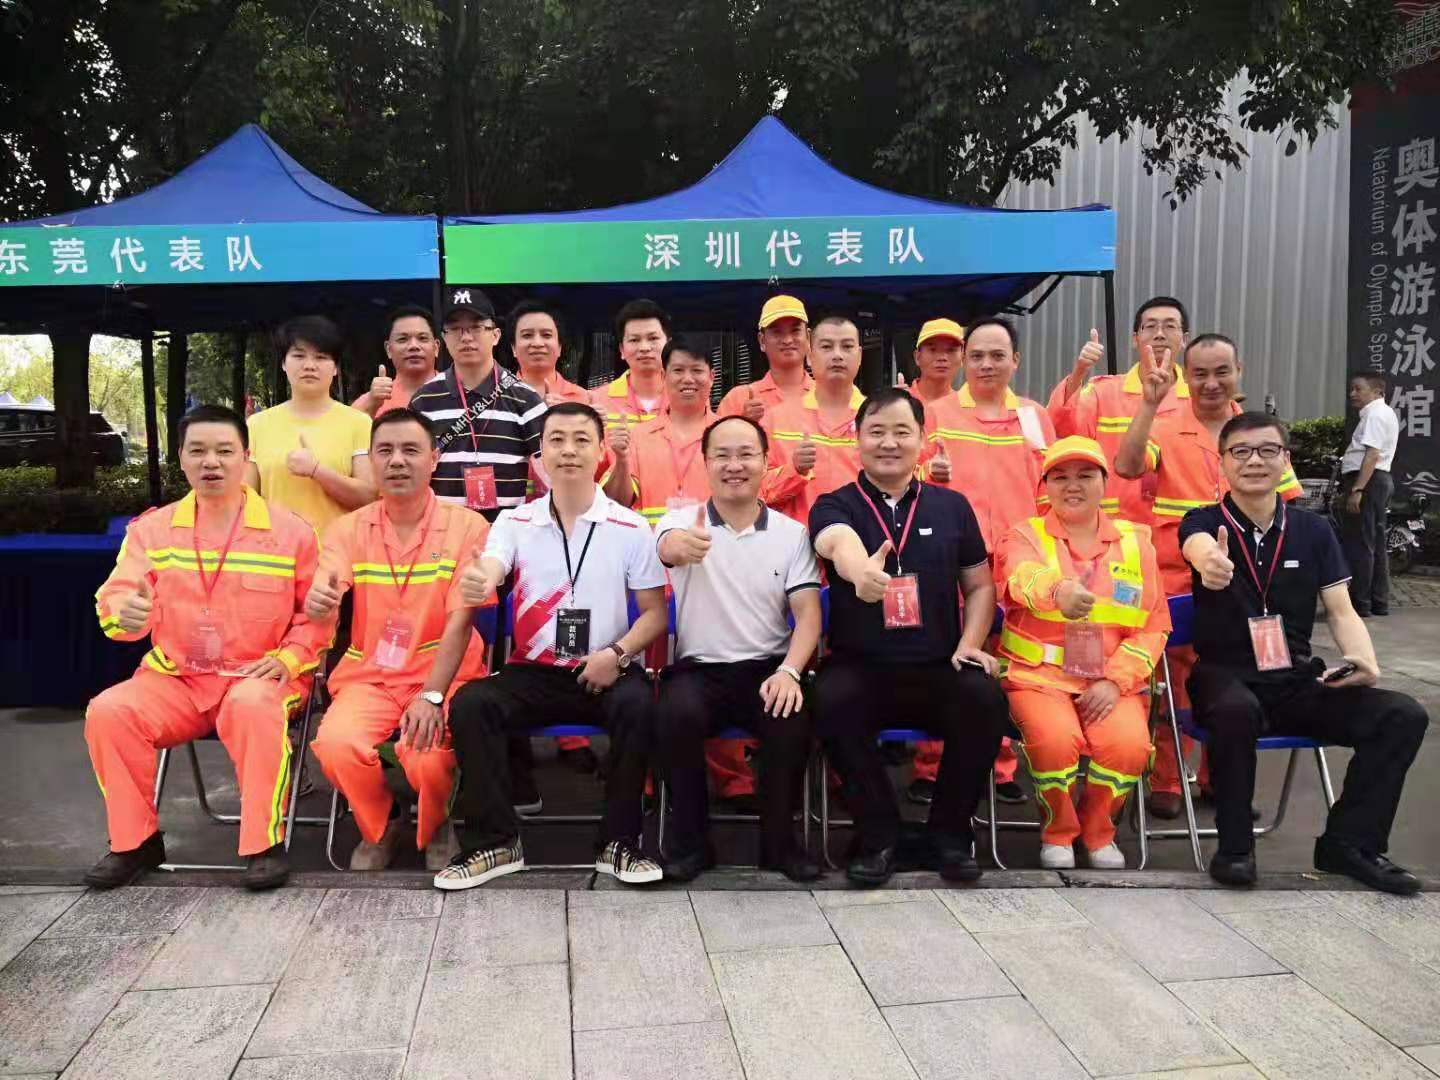 珠三角地区举办环卫技能竞赛活动 246名环卫工匠齐聚广州共赴竞赛